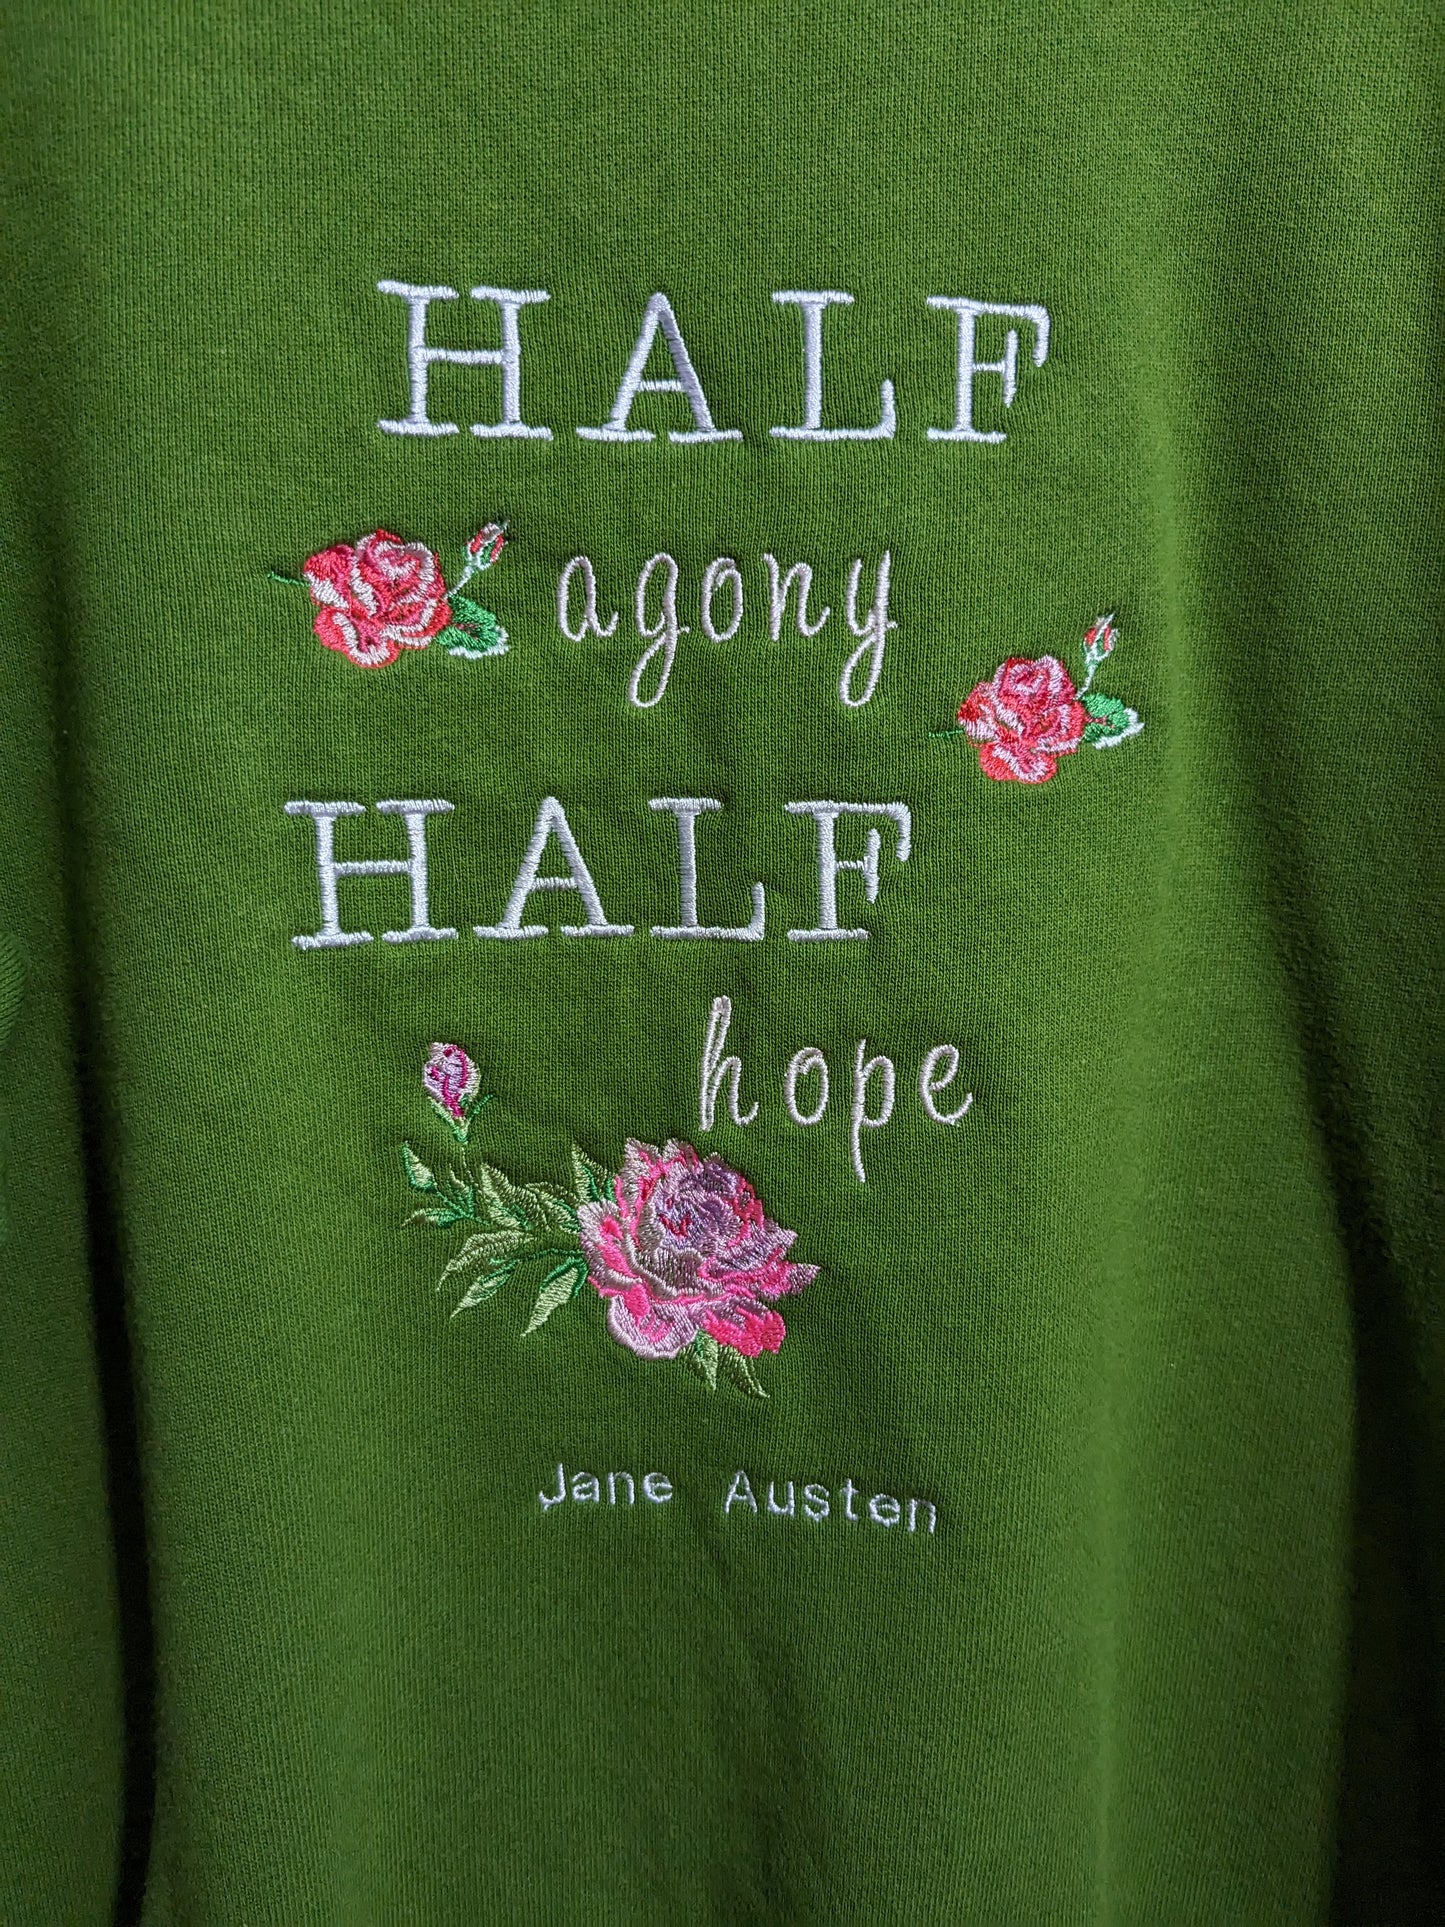 Size XL Green Reworked Sweatshirt - Embroidered Jane Austen - Half Agony Half Hope Floral Design